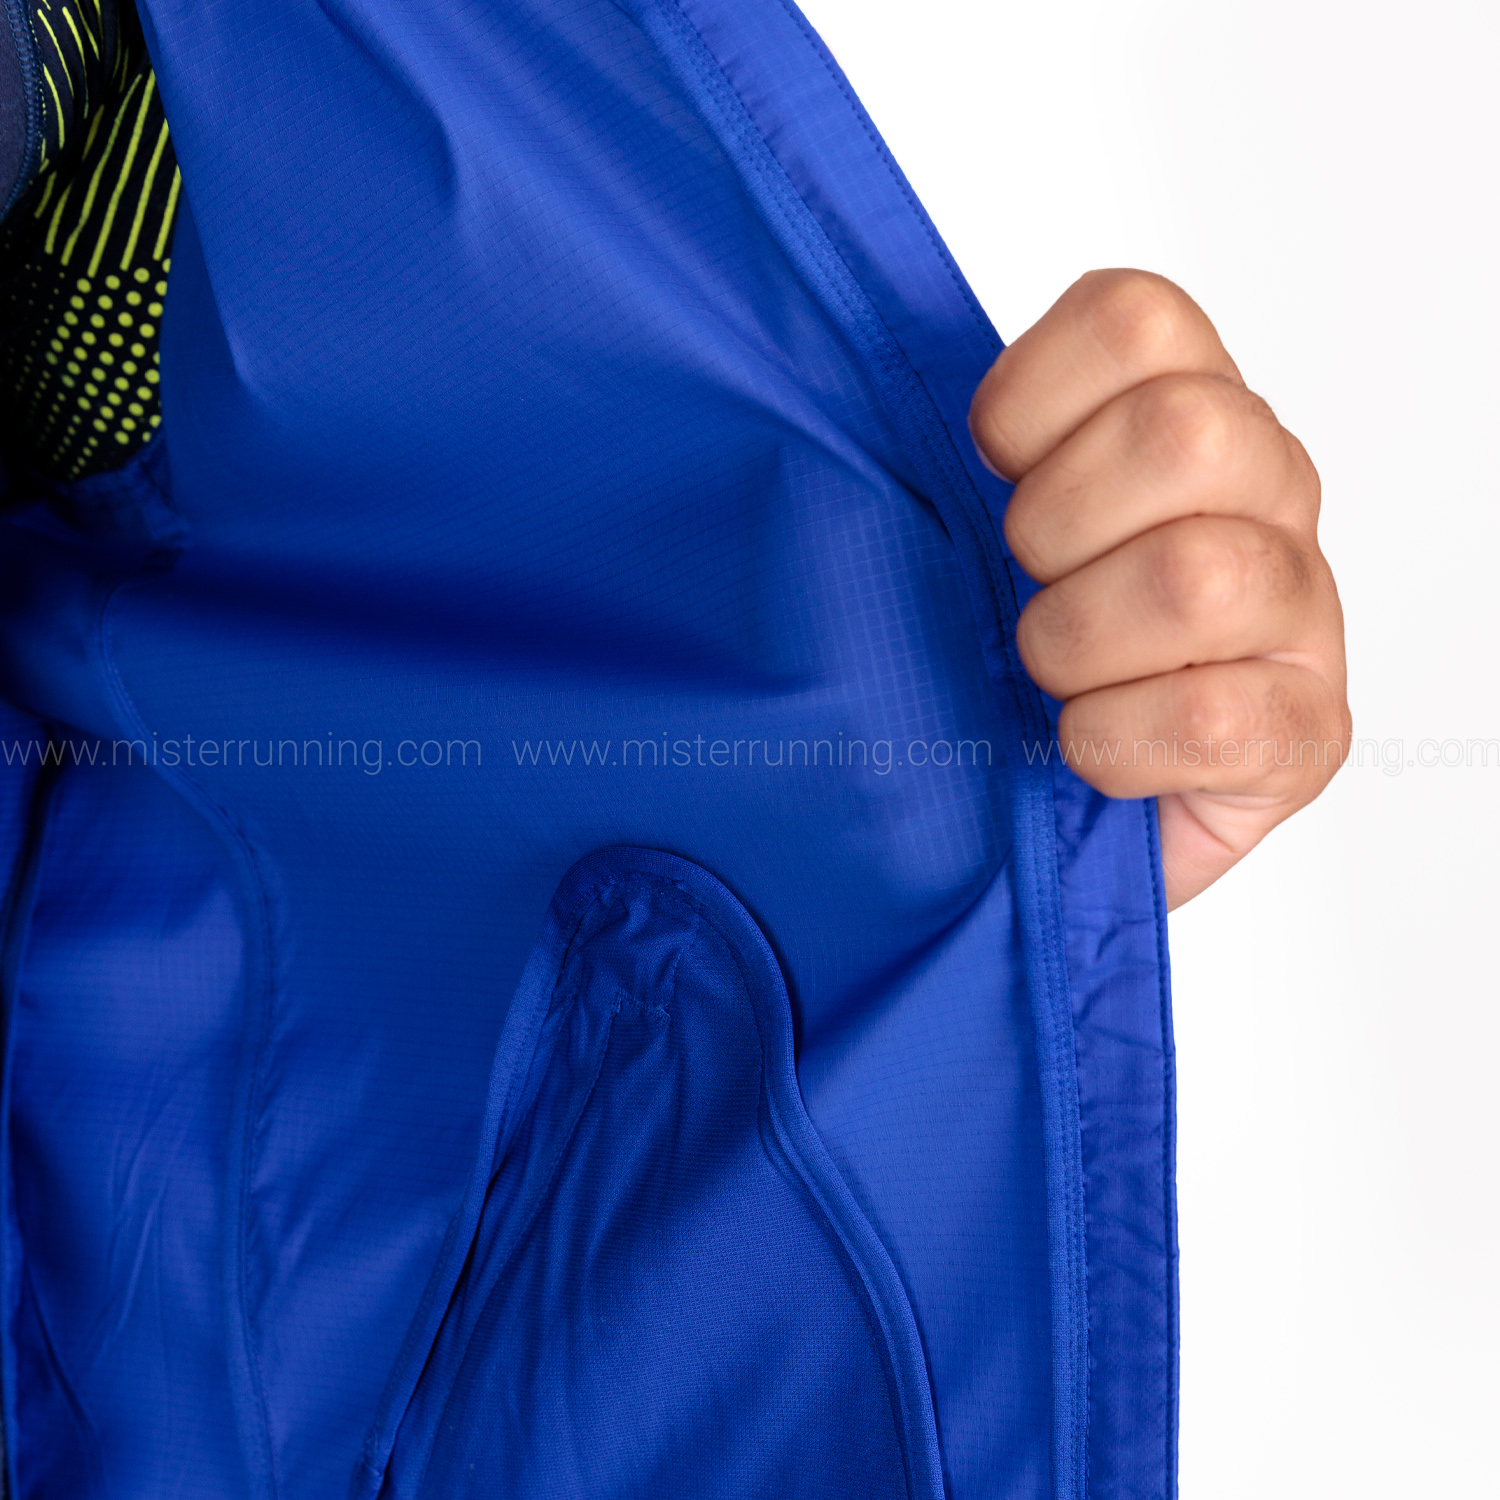 adidas Marathon Logo Jacket - Royal Blue